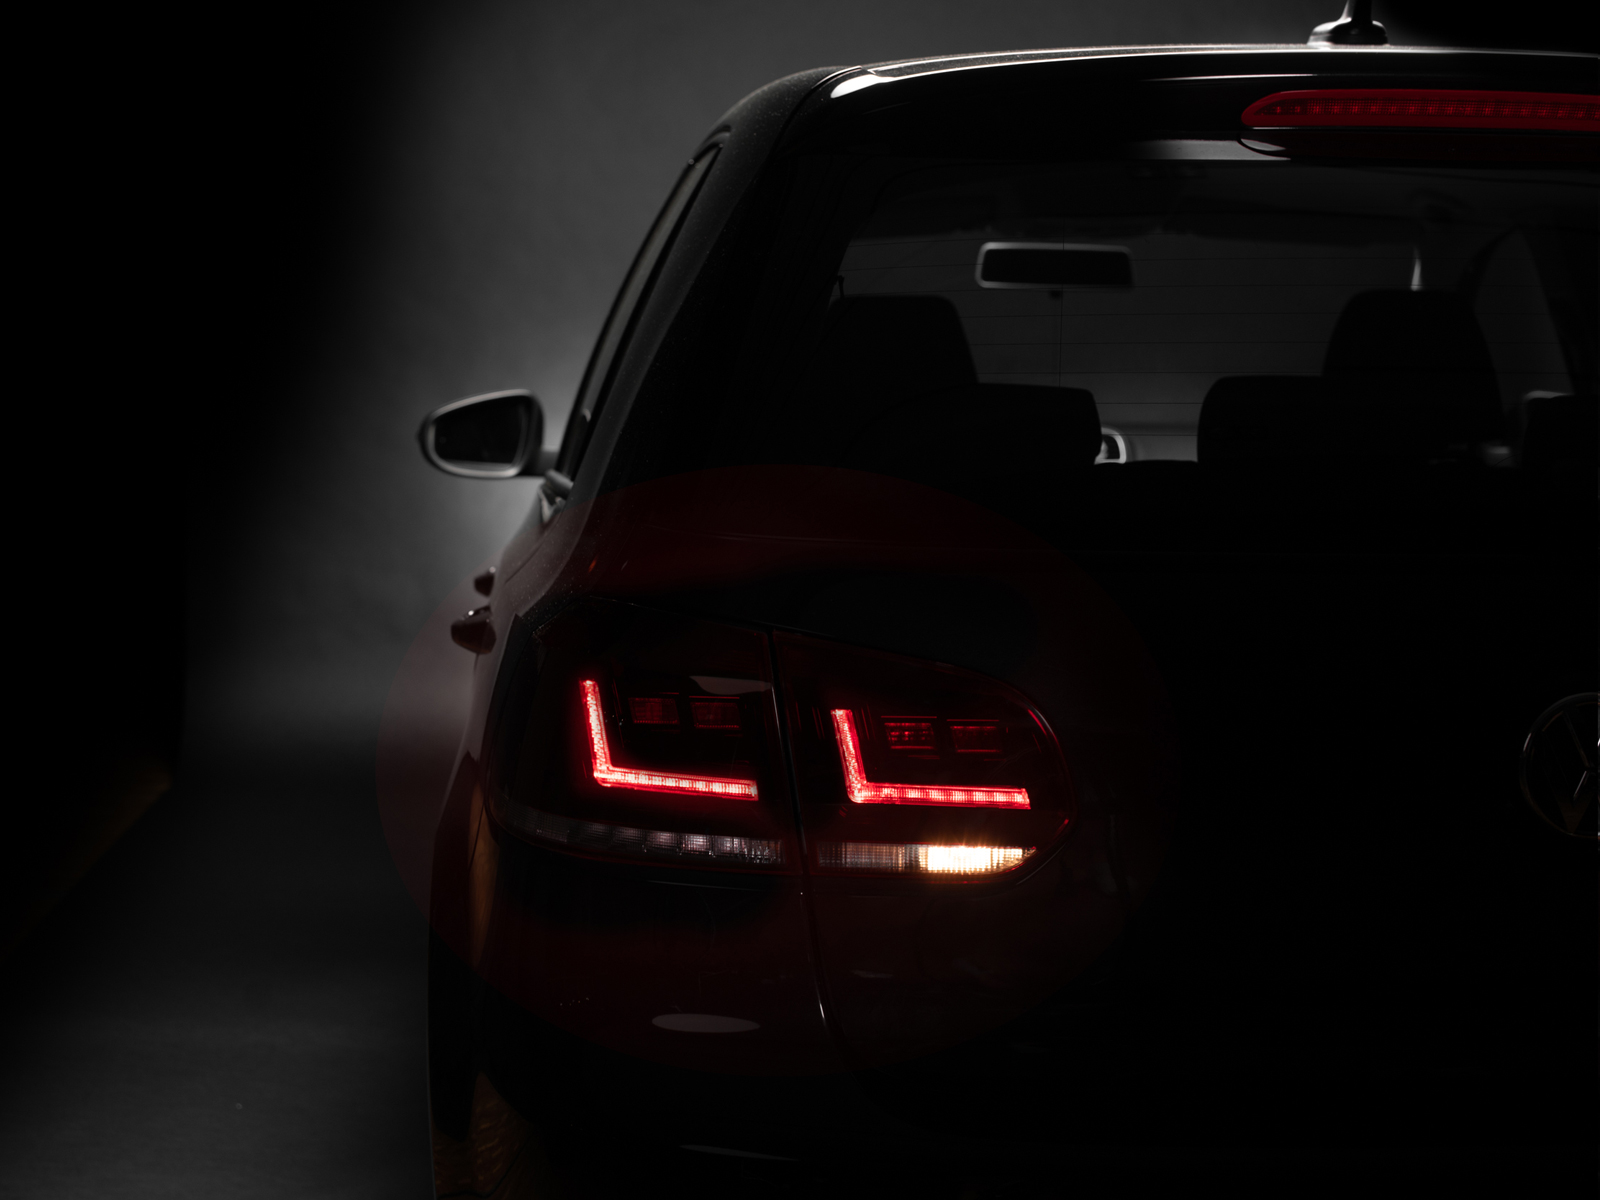 SW-Celi LED Rückleuchten für VW Golf 6 Black/smoke/white mit dynamischen  LED Blinker Lightbar (auch für Werks LED) - tuning online kaufen